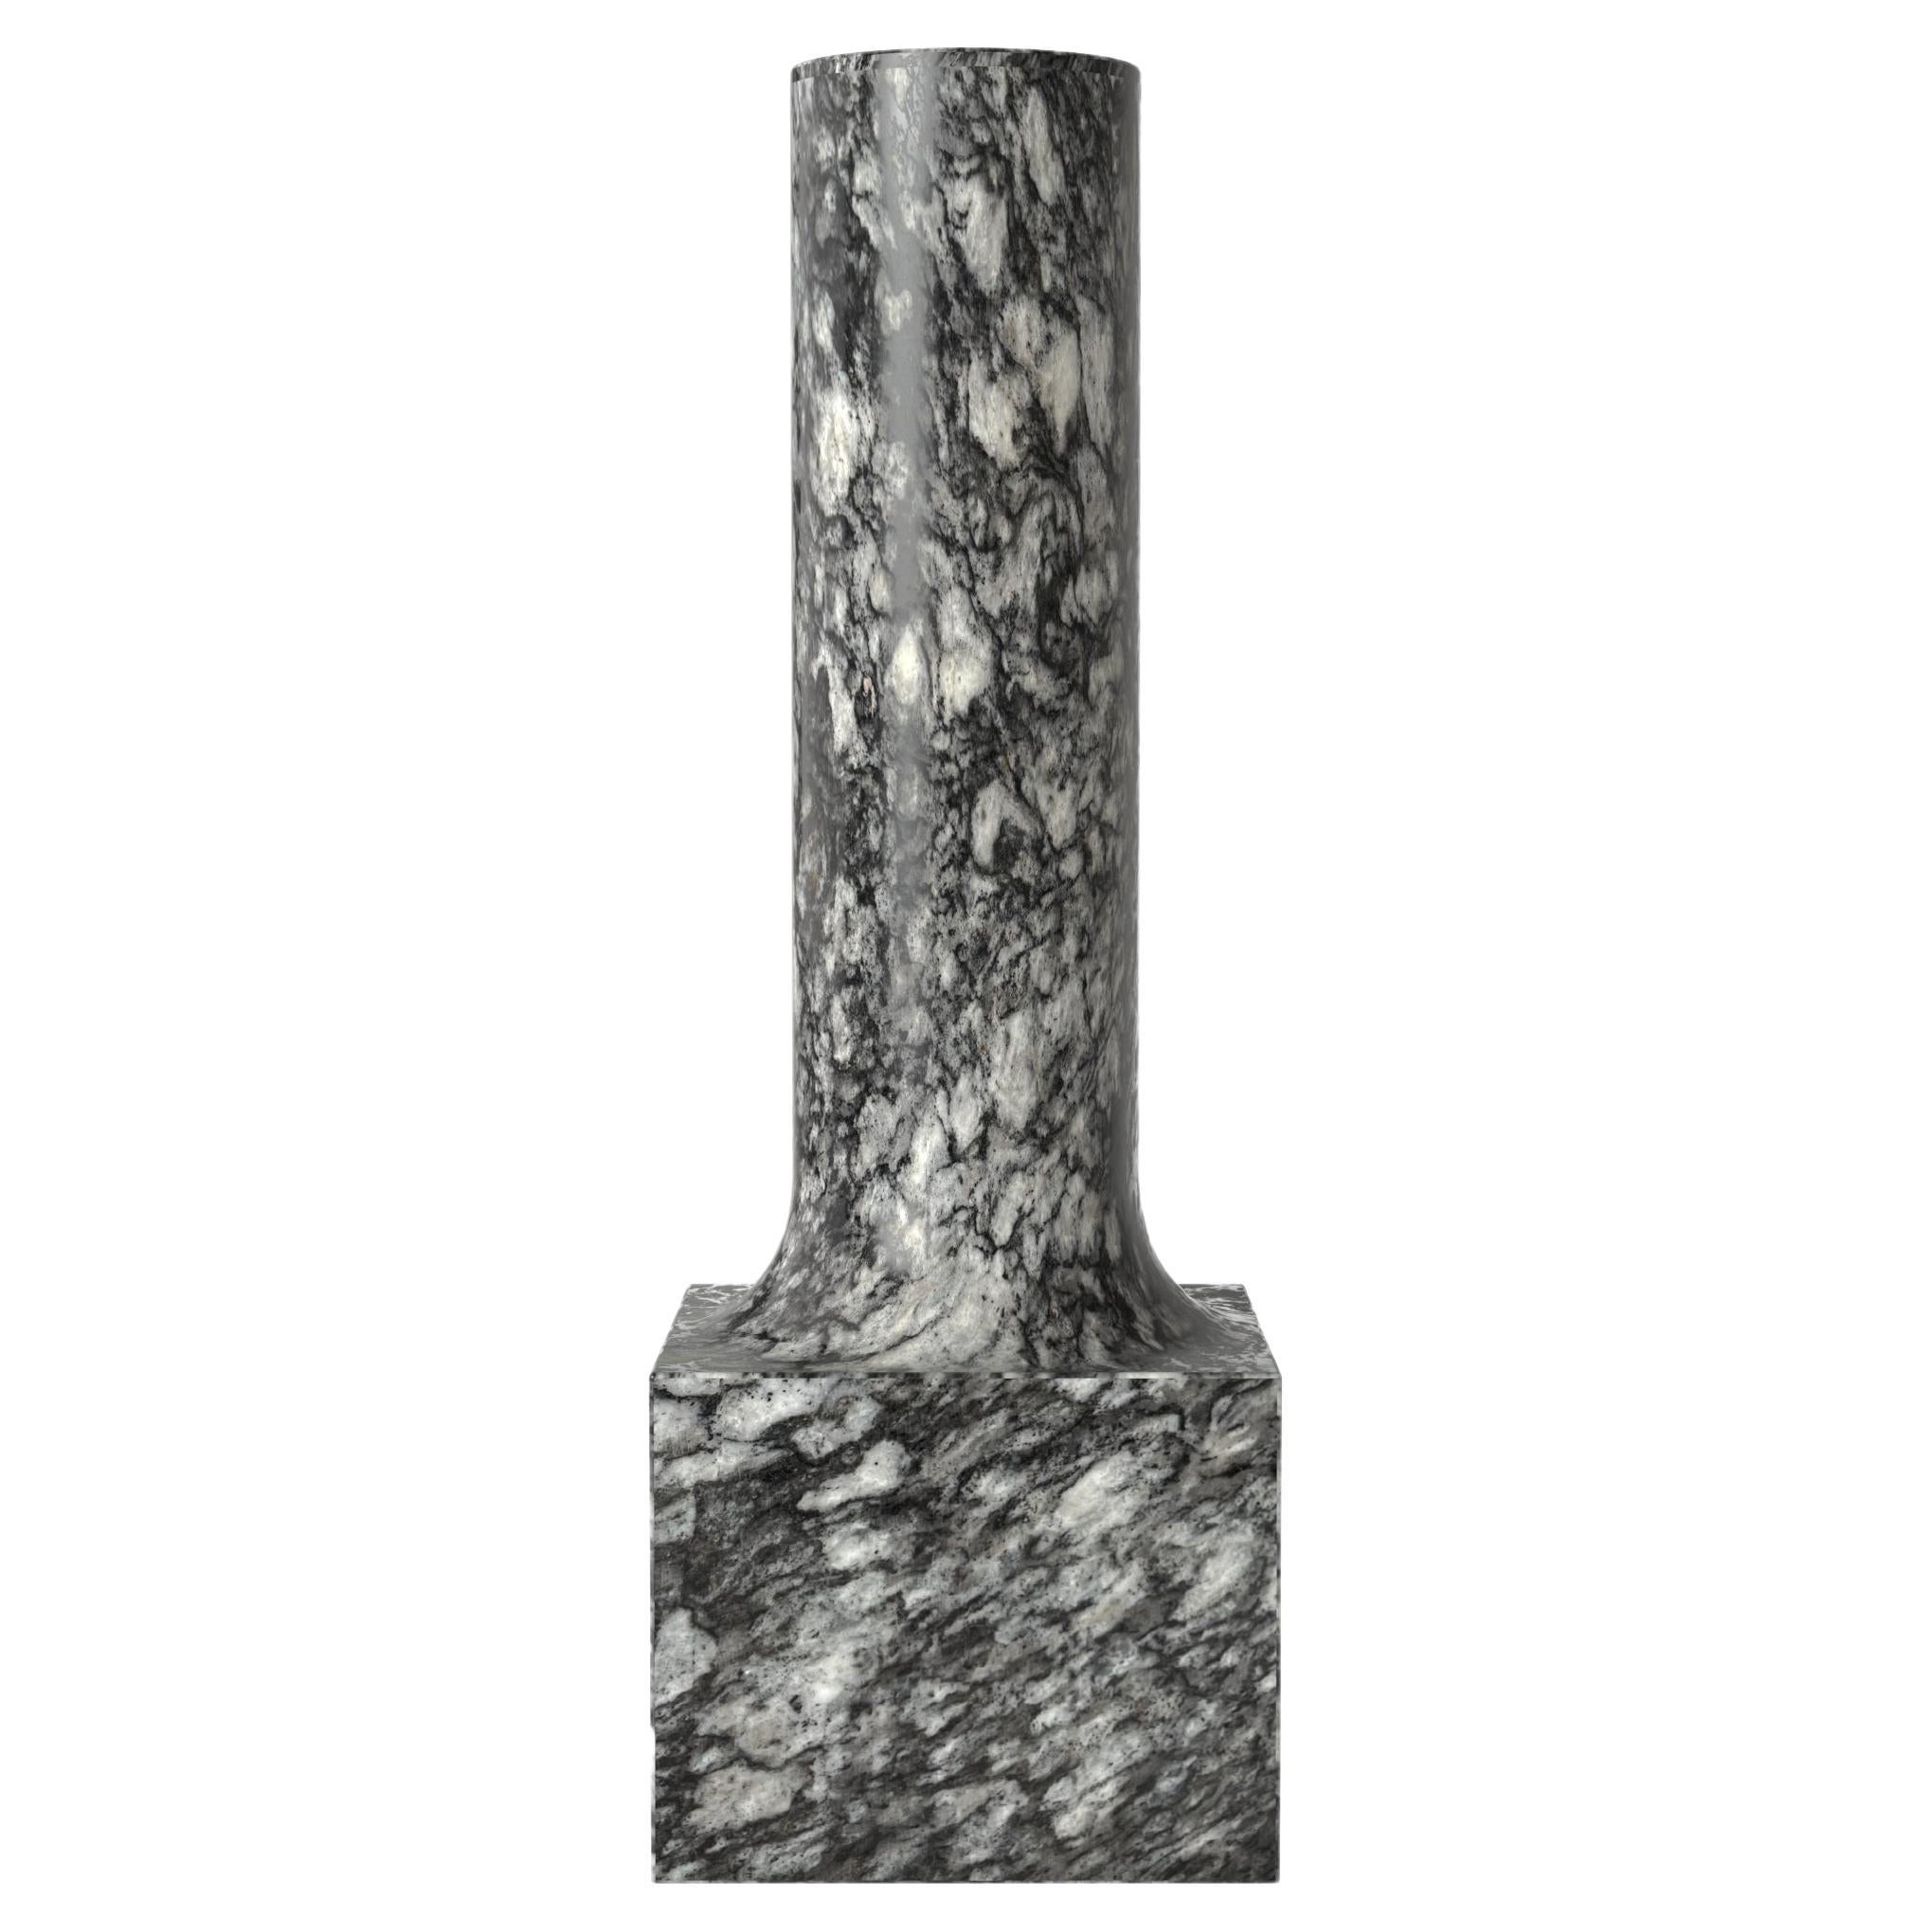 Contemporary Limited Edition Granite Stone Vase, Palazzo V2 by Edizione Limitata For Sale